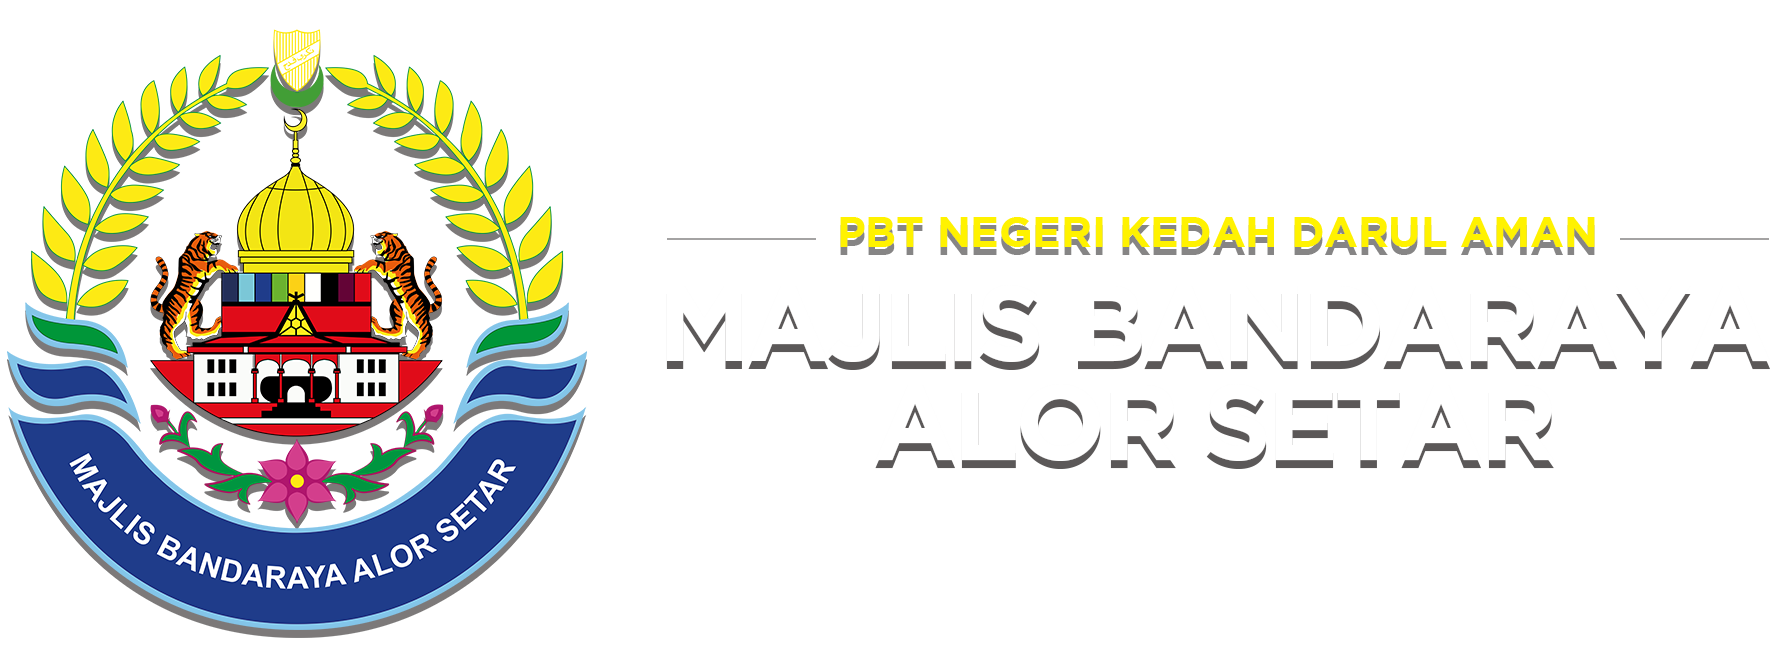  MAJLIS BANDARAYA ALOR SETAR  Portal PBT Kedah